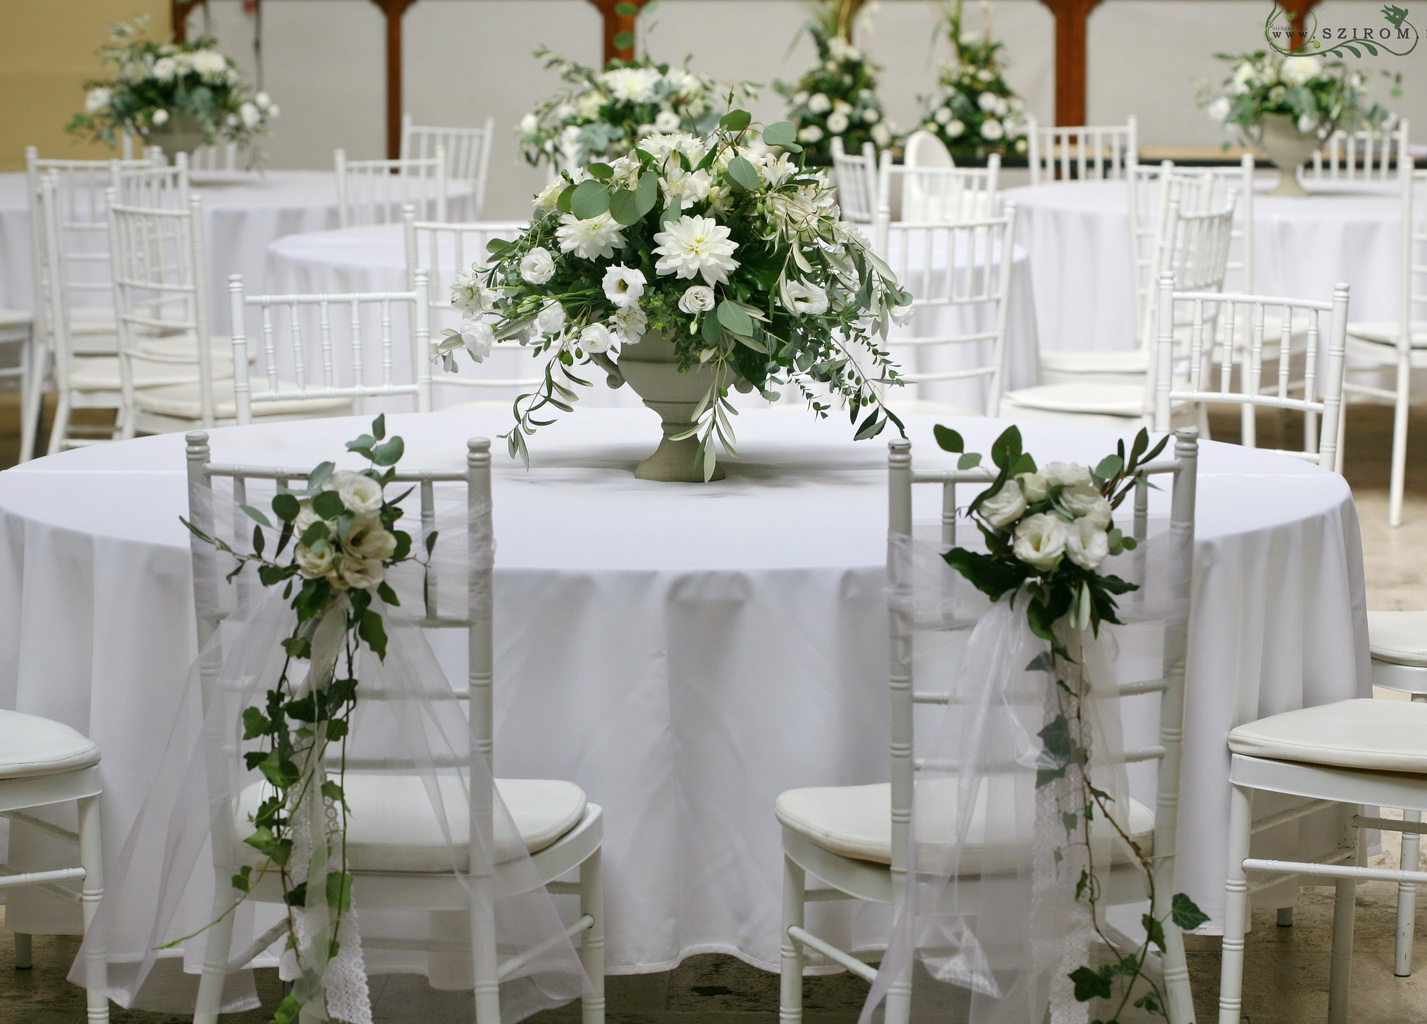 Főasztaldísz Vajdahunyad vára (liziantusz, dália, alstromelia, anemone, fehér ), esküvő